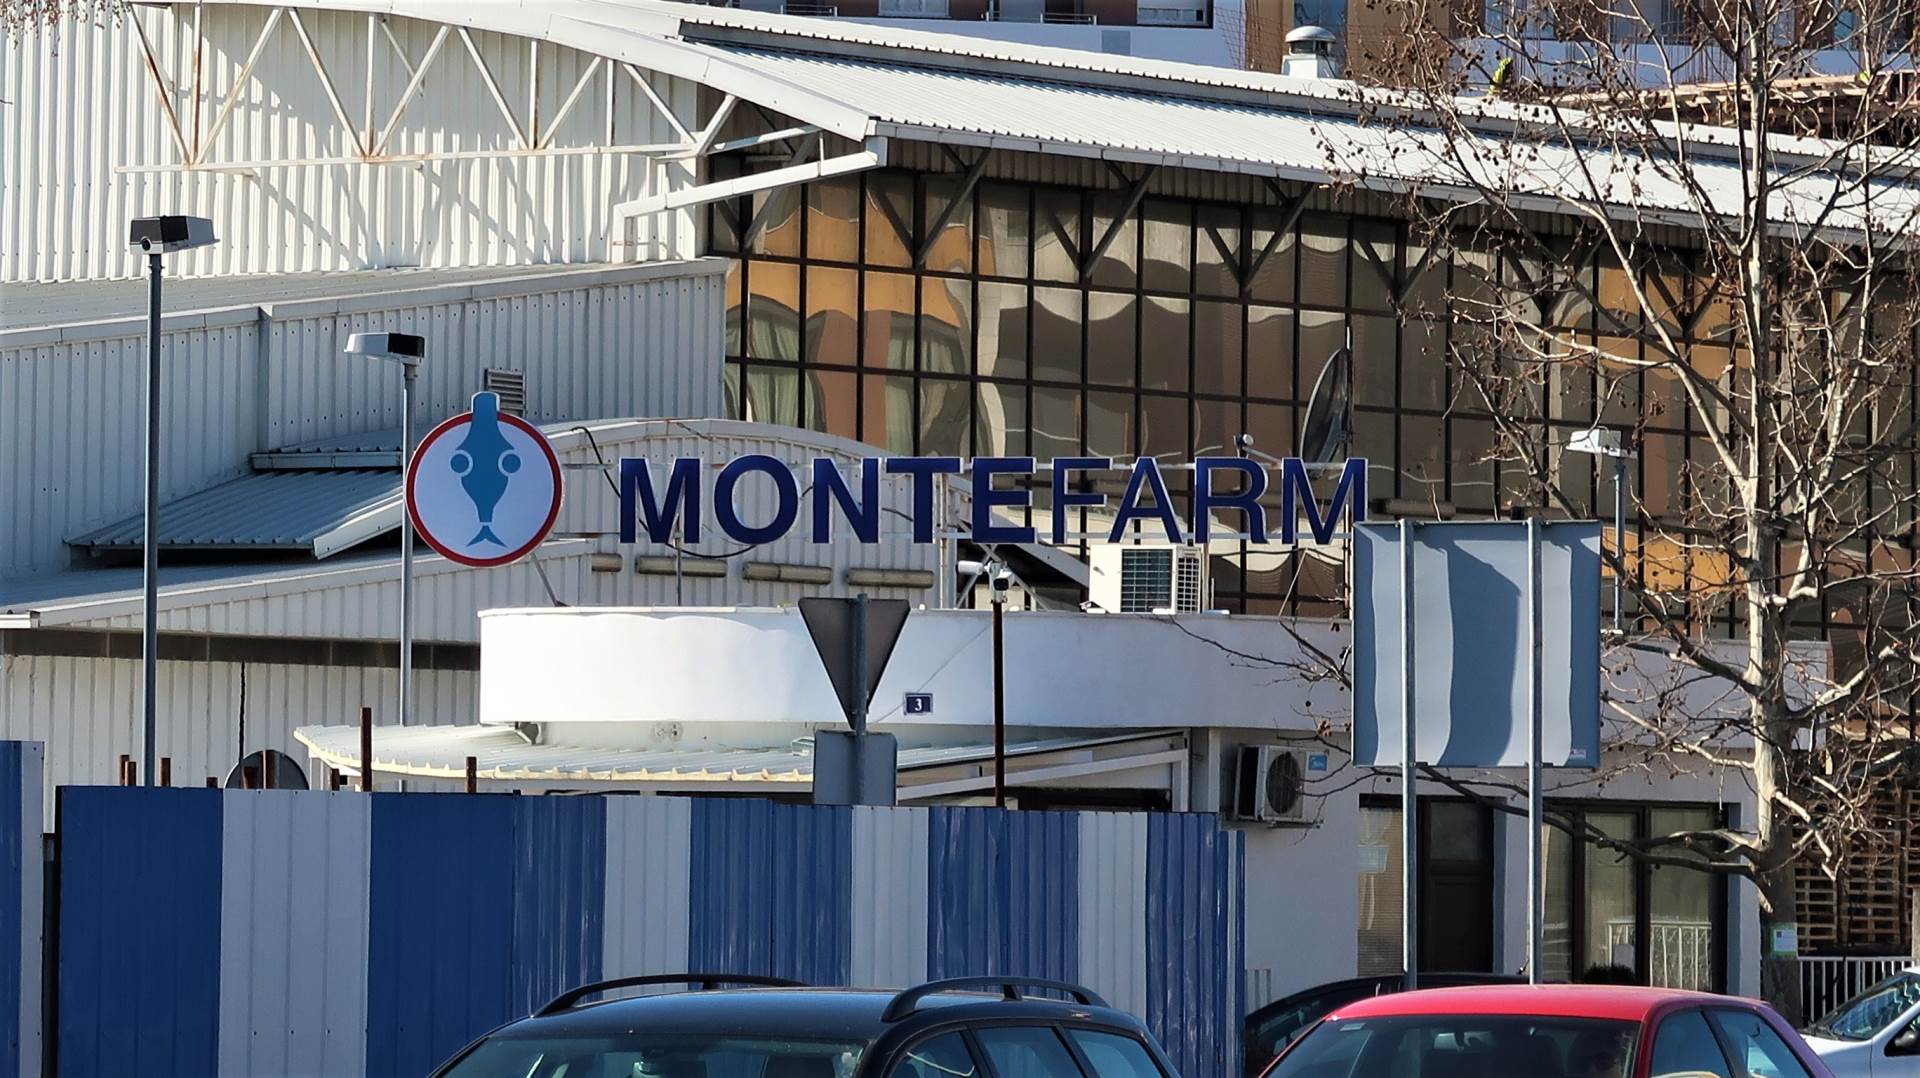  Ministarstvo zdravlja: Direktor Montefarma prekršio zakonske procedure i zloupotrijebio položaj 